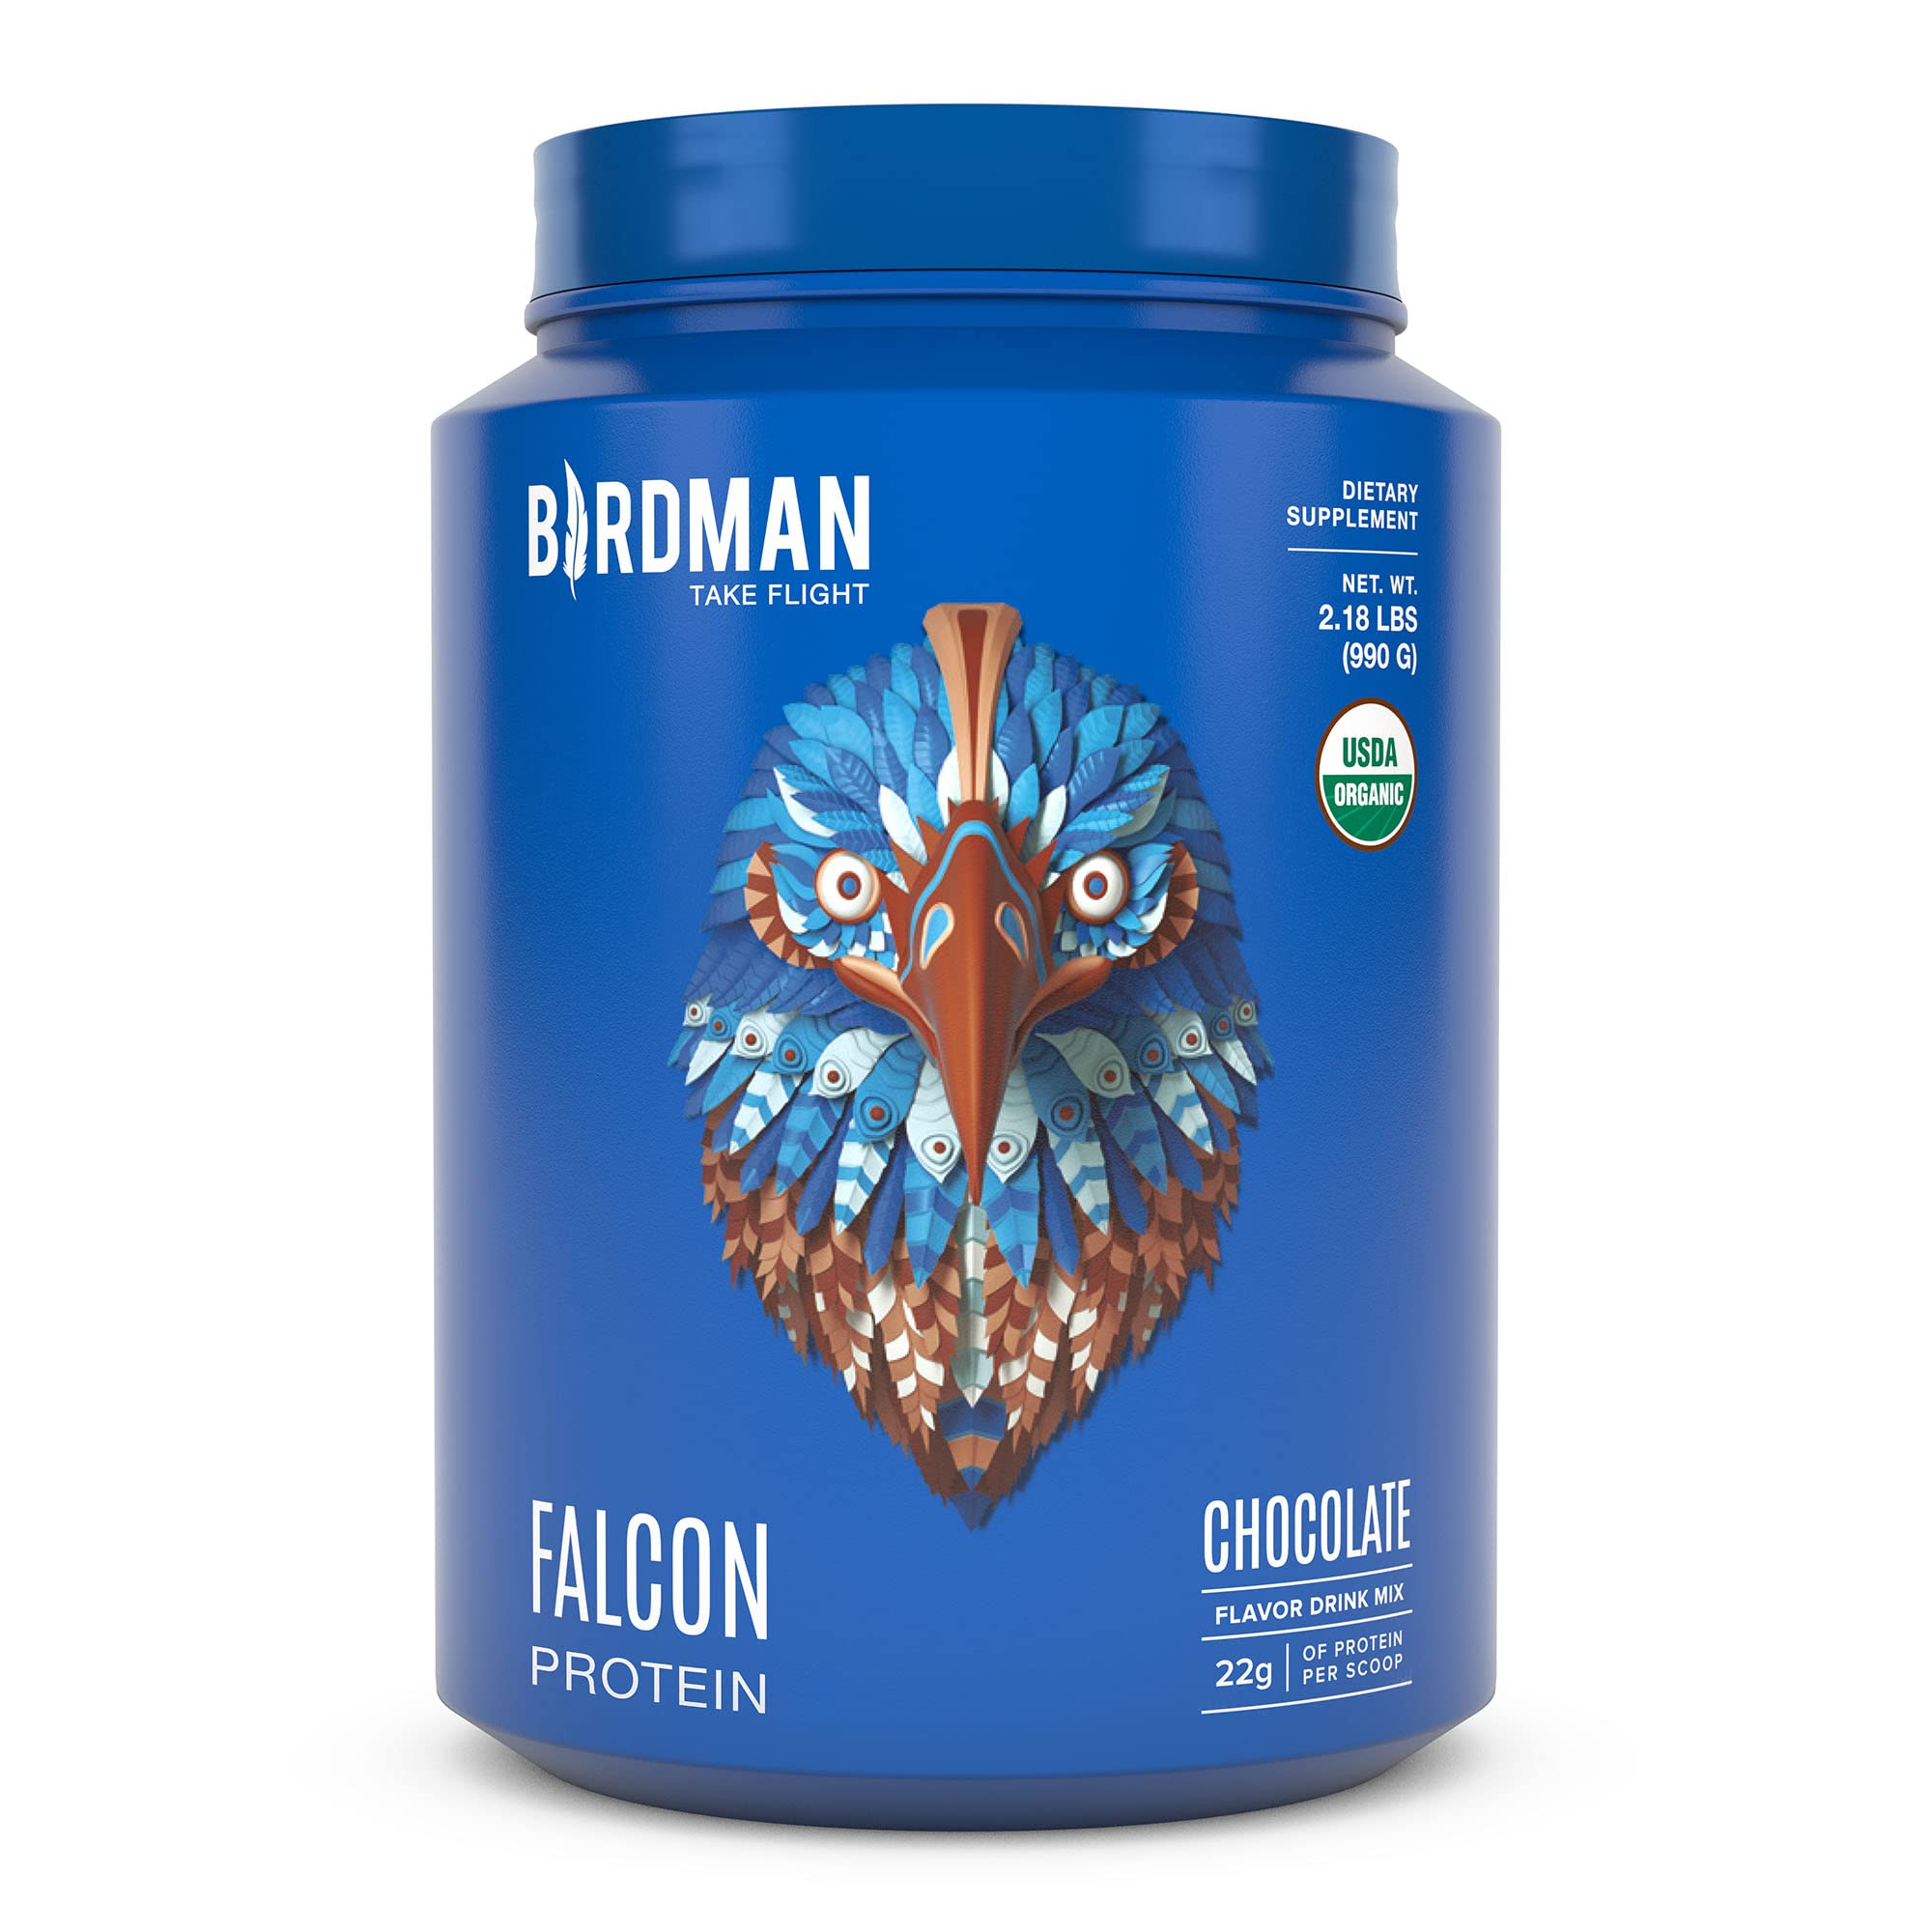 BIRDMAN Falcon Plant Based Protein Powder | Vegan Protein Powder, Keto Friendly, Kosher, Gluten Free, Organic Pea Protein, Non Dairy, Lactose Free Protein | Chocolate Flavor - 33 Servings - 2.18 lb